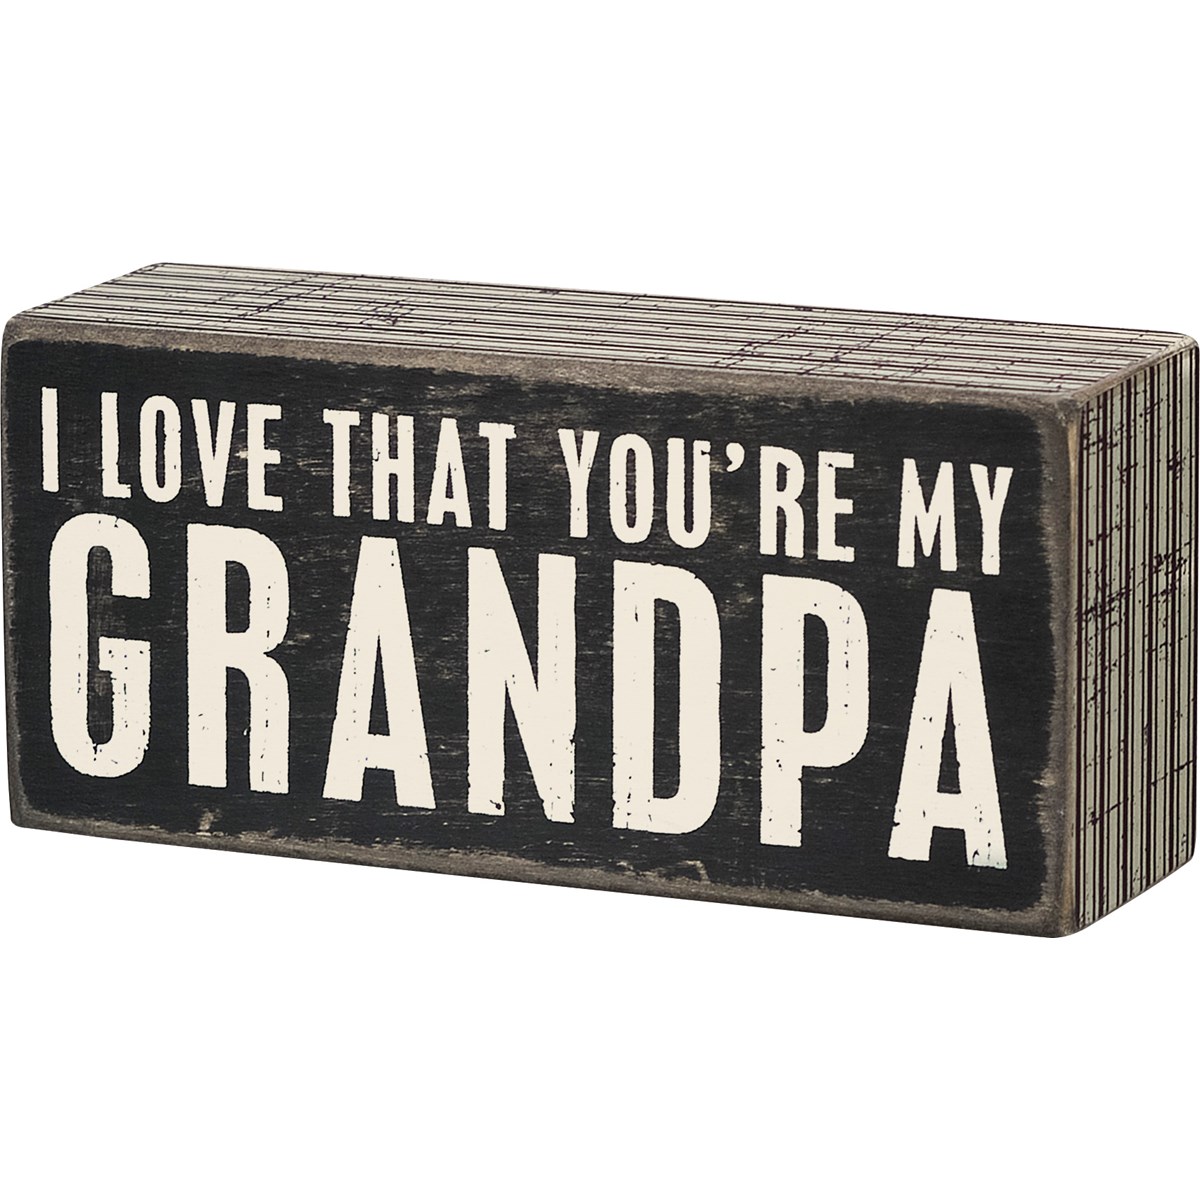 Box Sign - My Grandpa - 5.50" x 2.50" x 1.75" - Wood, Paper